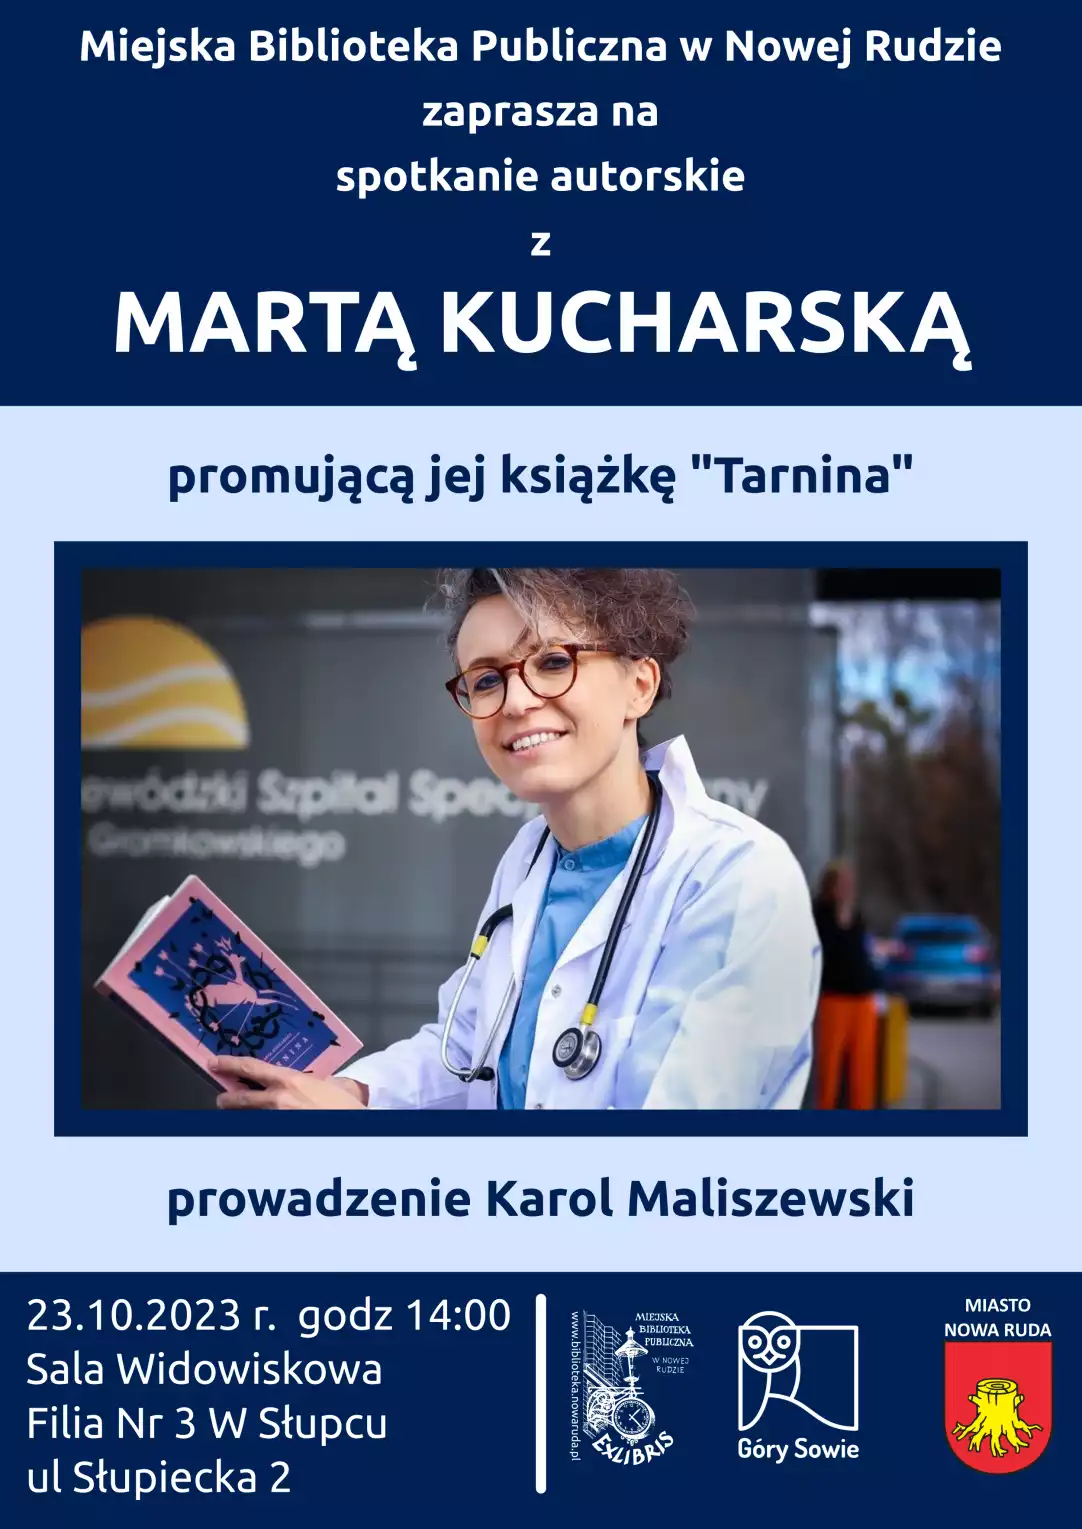 Plakat promujący spotkanie autorskie z Martą Kucharską - powiększenie